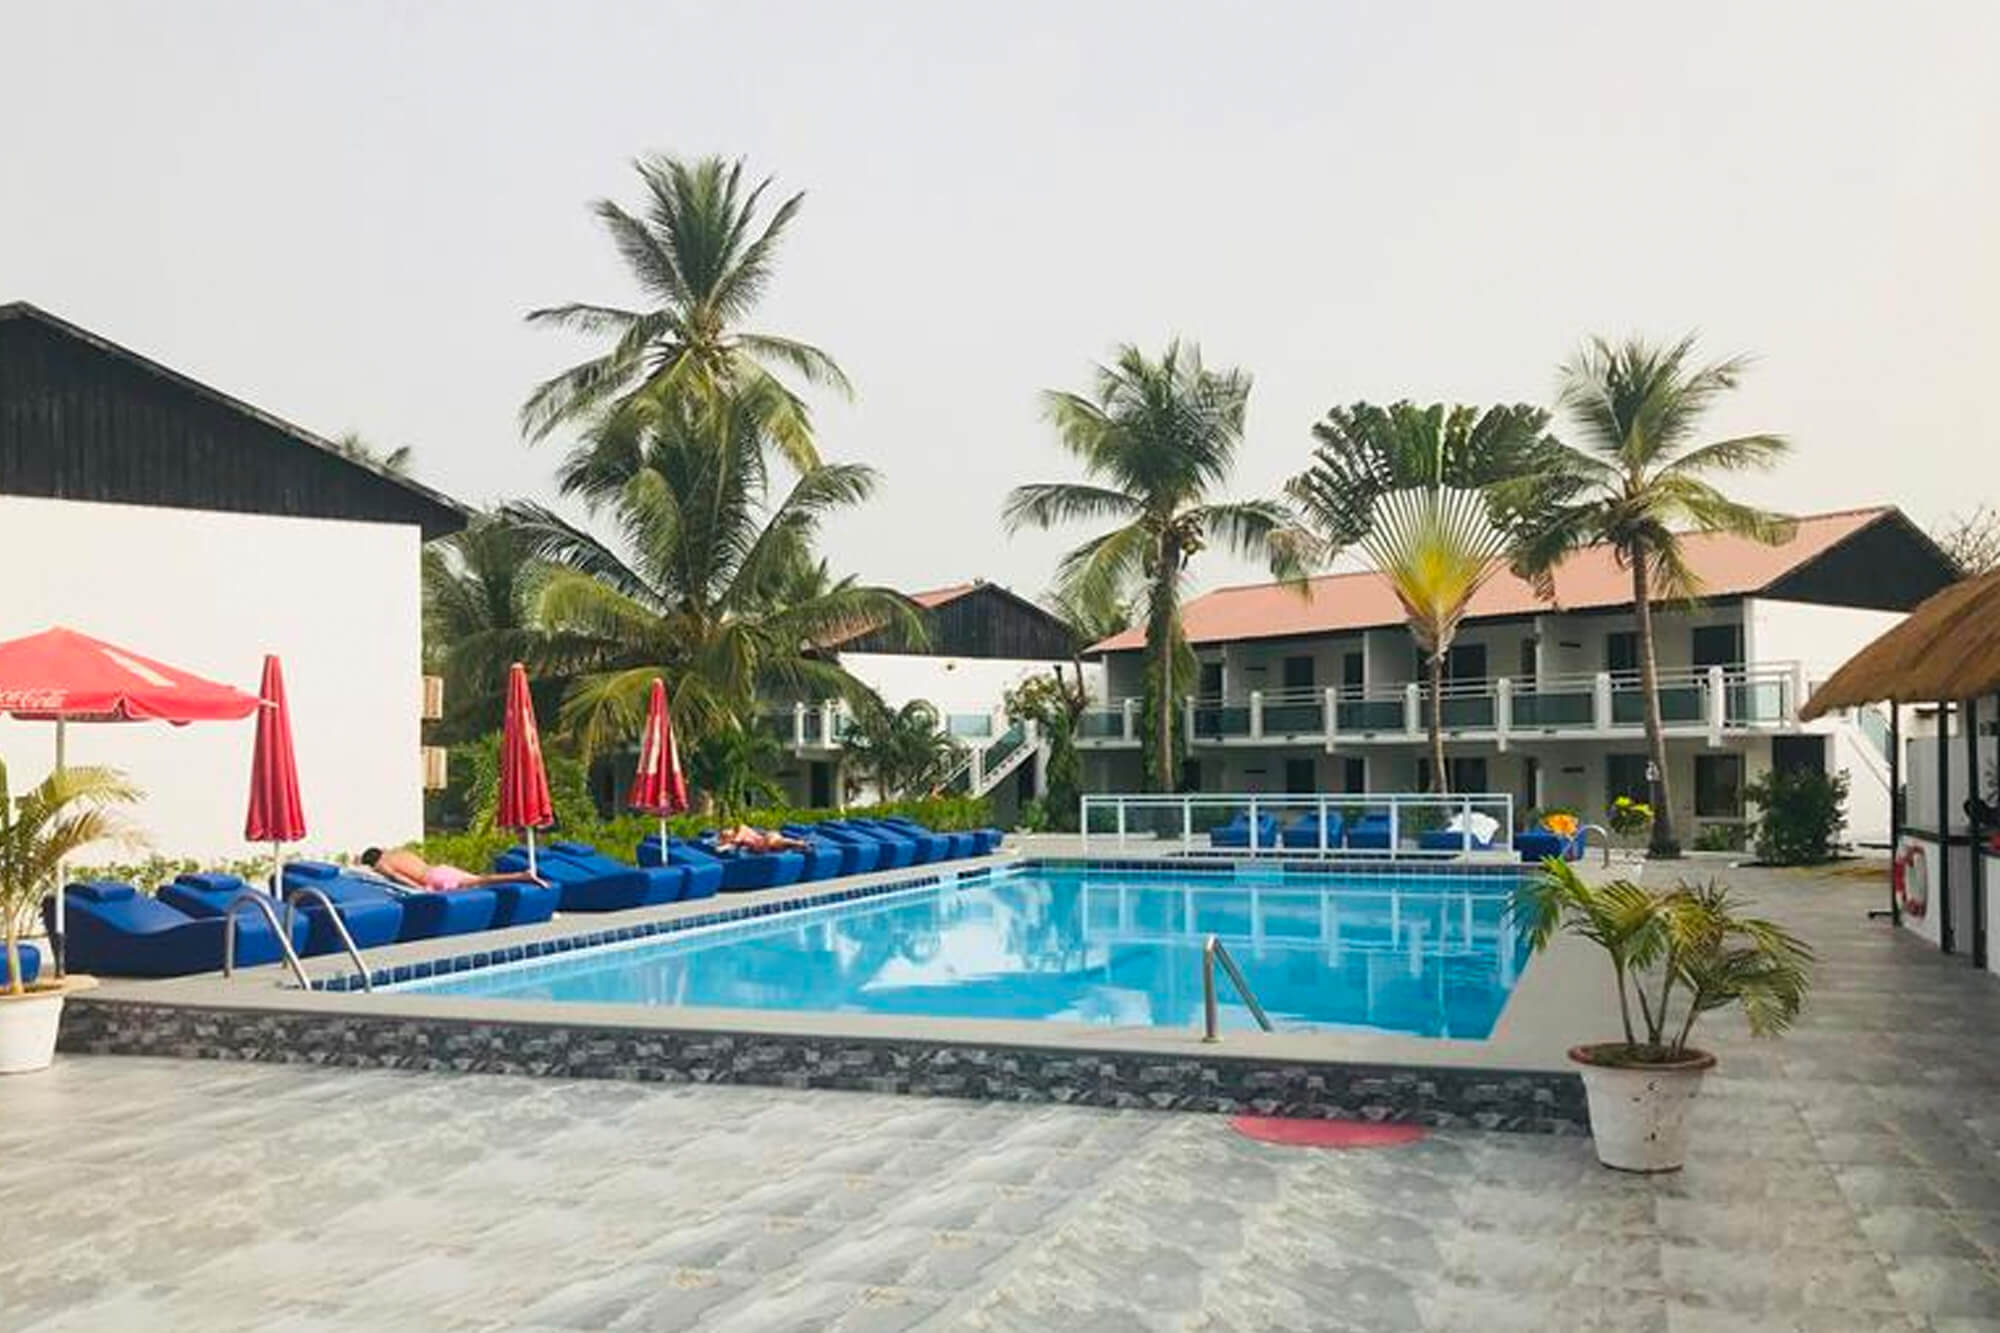 Zwembad en terras van het Bungalow Beach hotel en resort in Kotu, Gambia